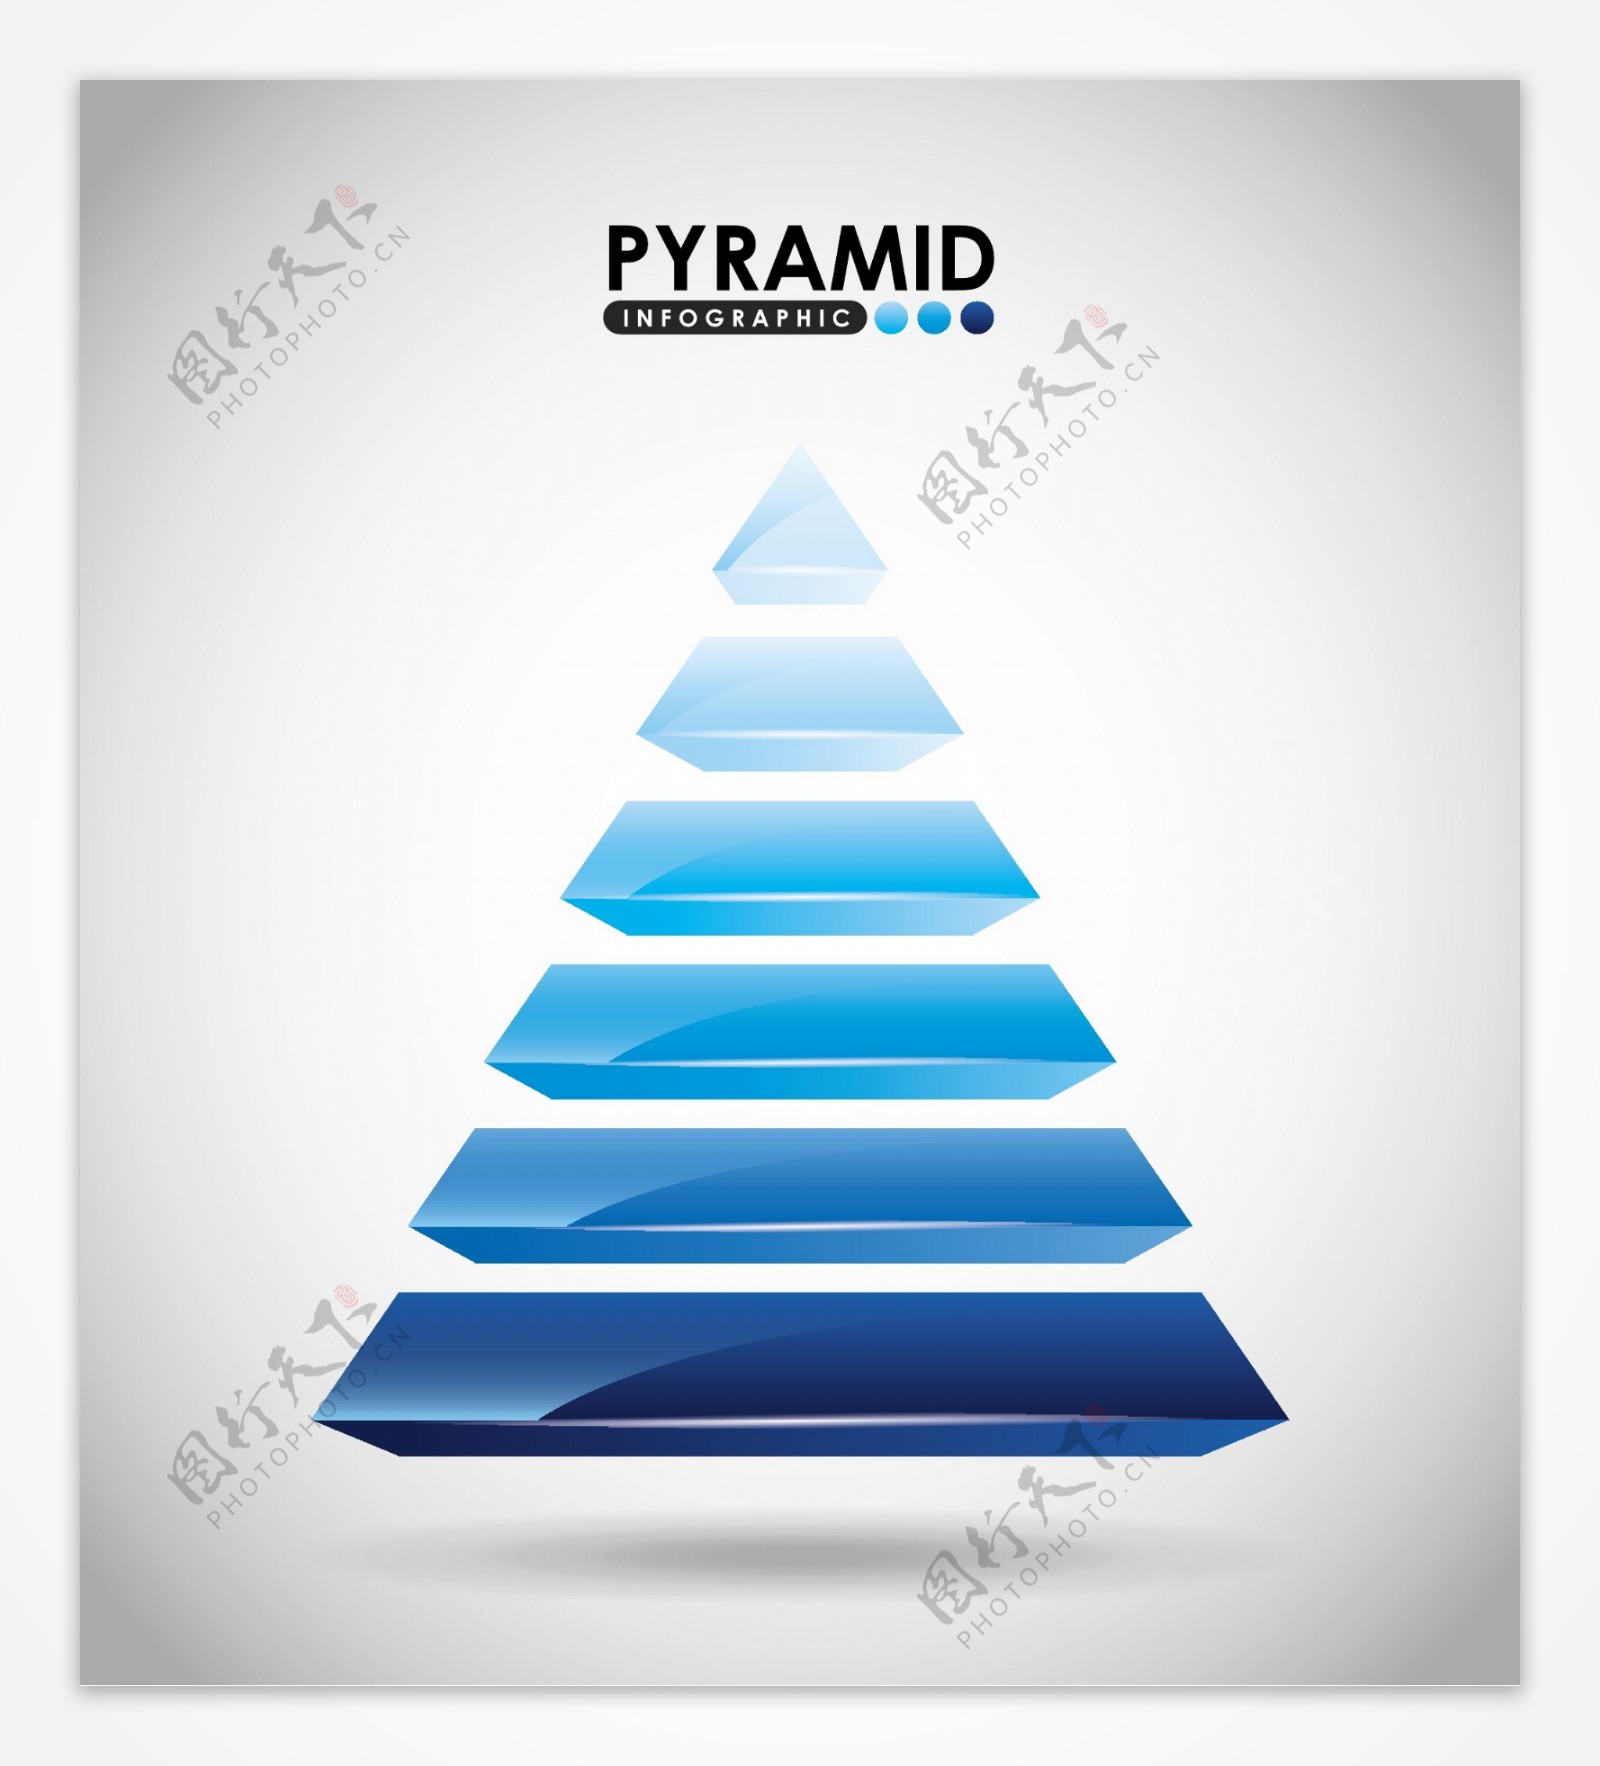 蓝色金字塔商务信息图表矢量素材